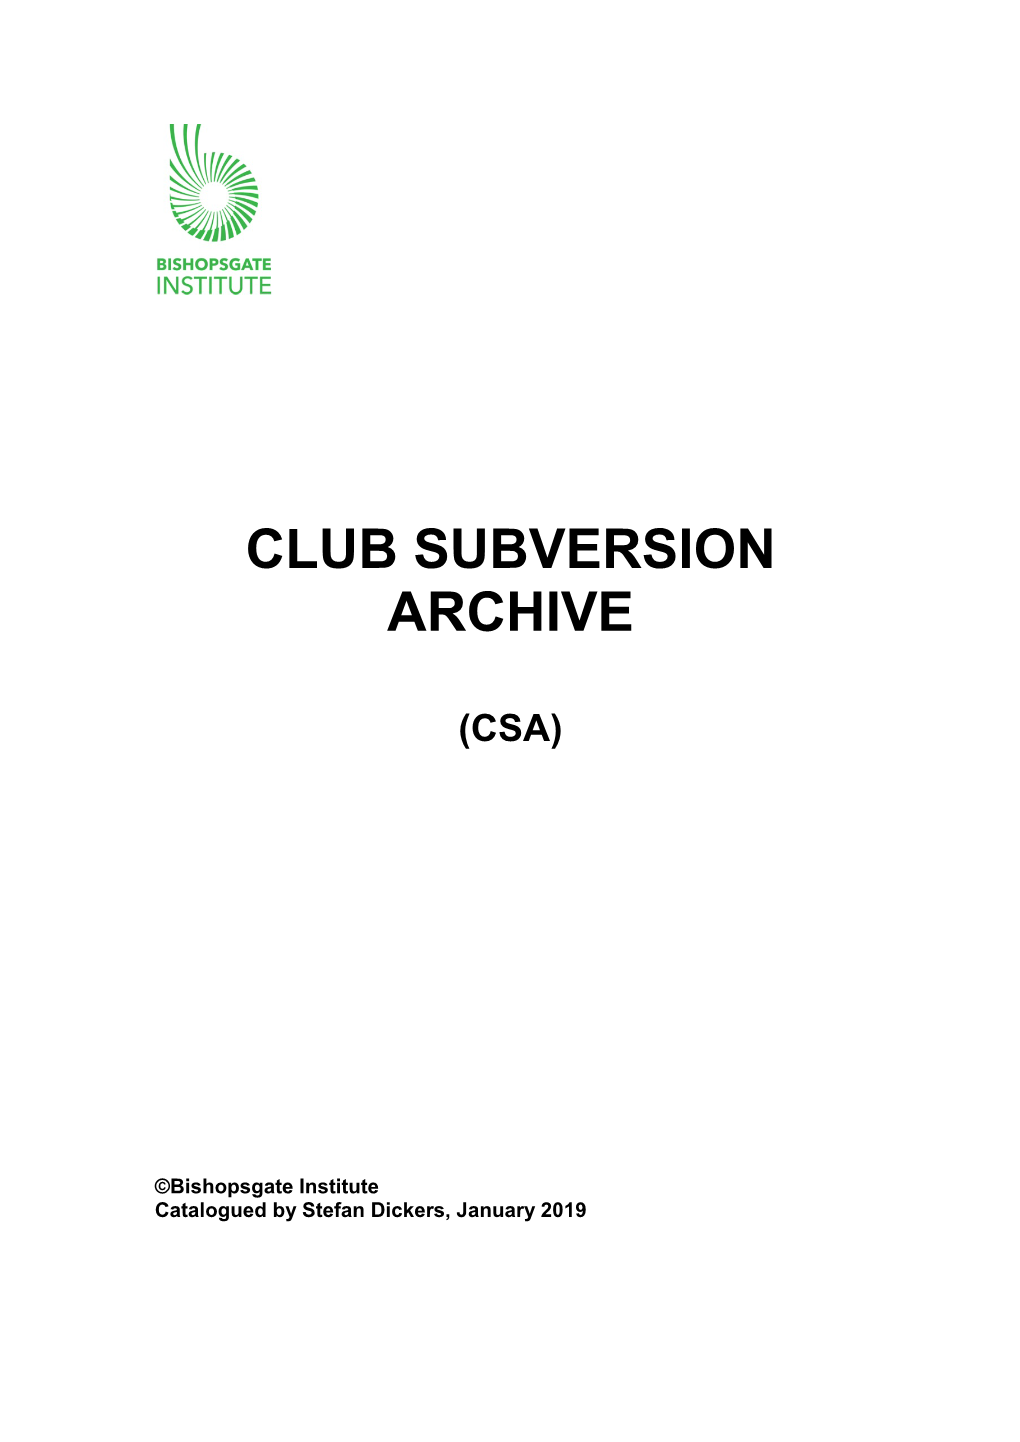 Club Subversion Archives Catalogue 71 KB